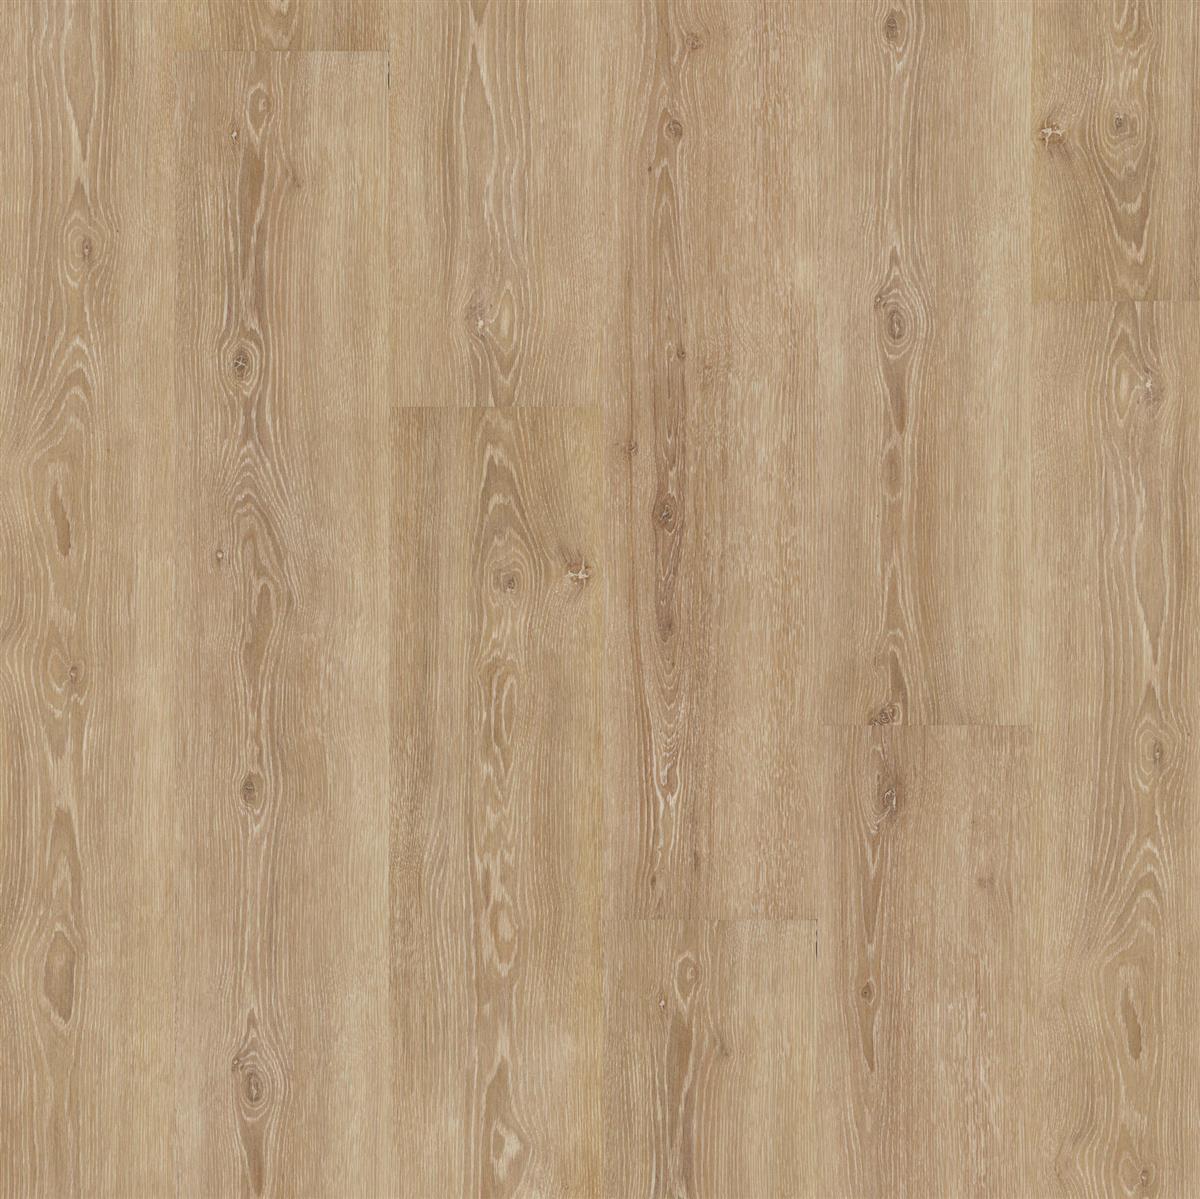 Klebevinyl JOKA Designböden 555 | 5308 Perfect Ivory Oak